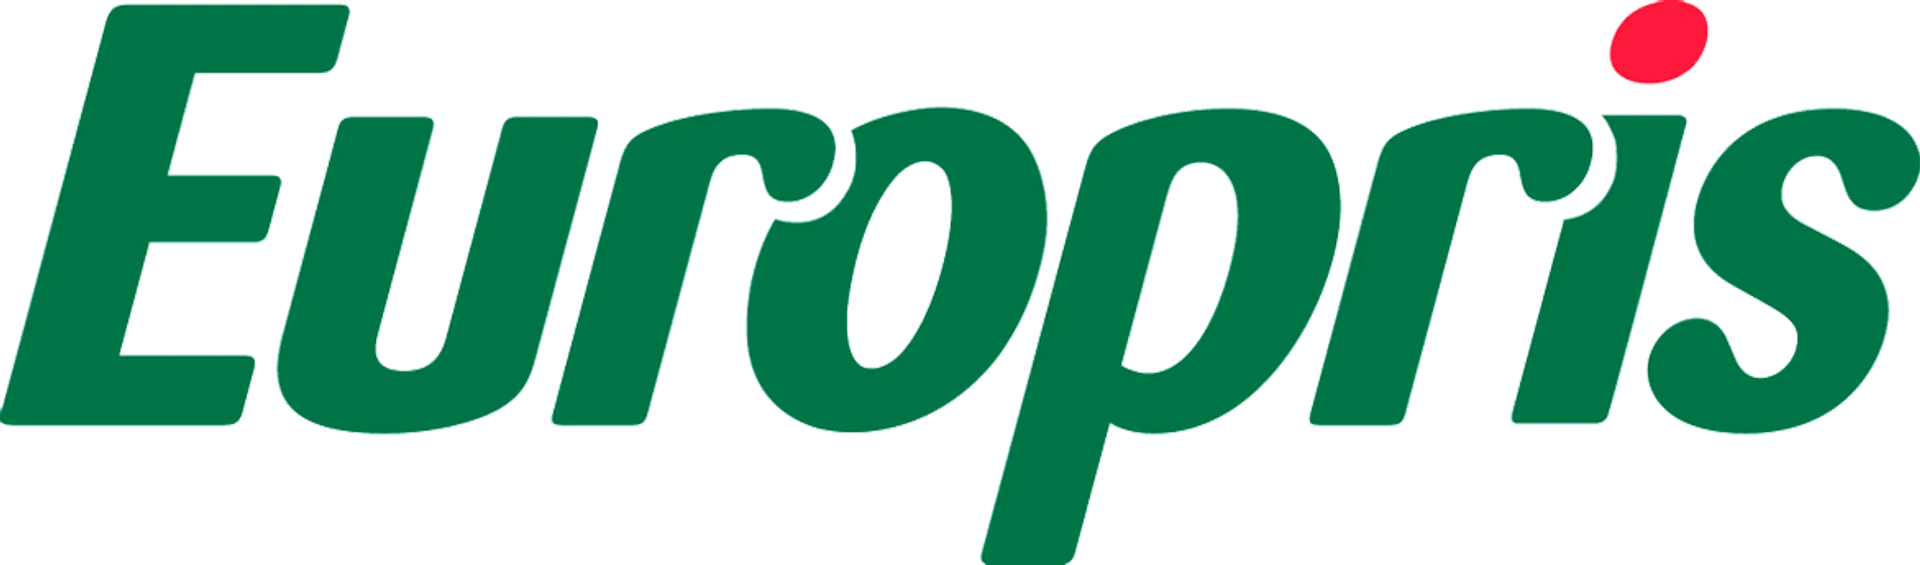 EUROPRIS logo